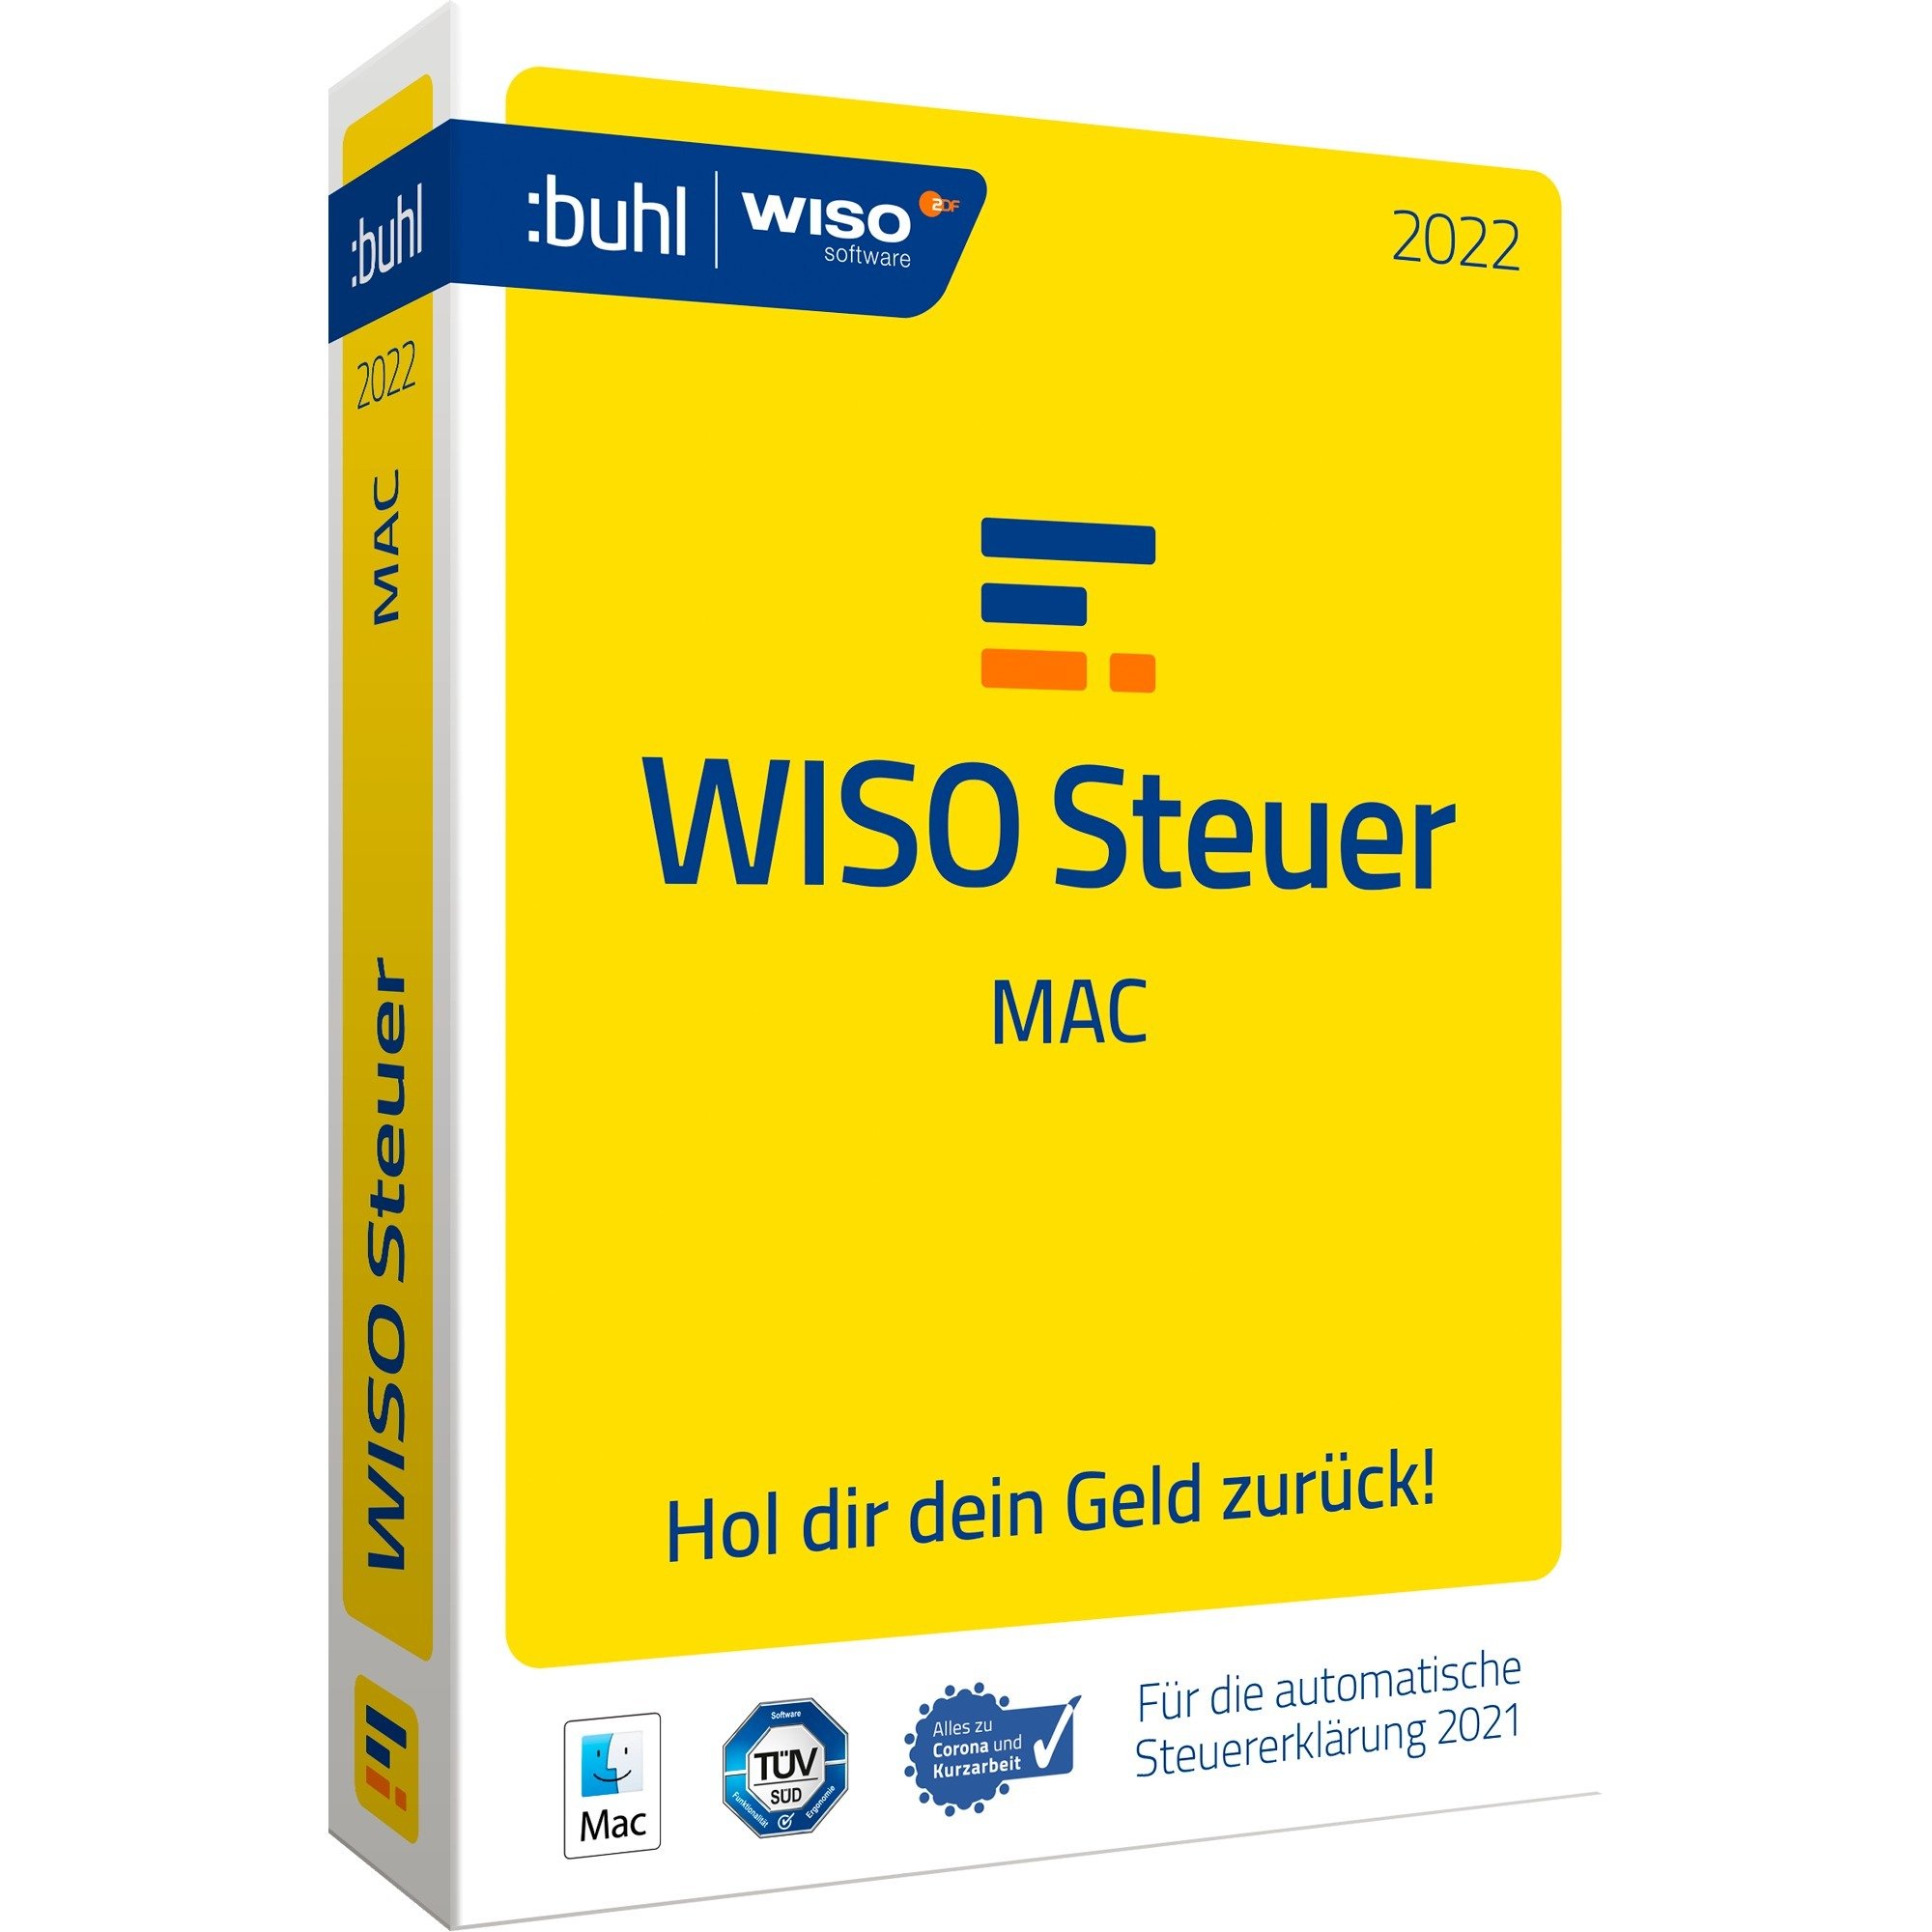 Image of Alternate - Buhl WISO Steuer-Mac 2022, Finanz-Software online einkaufen bei Alternate